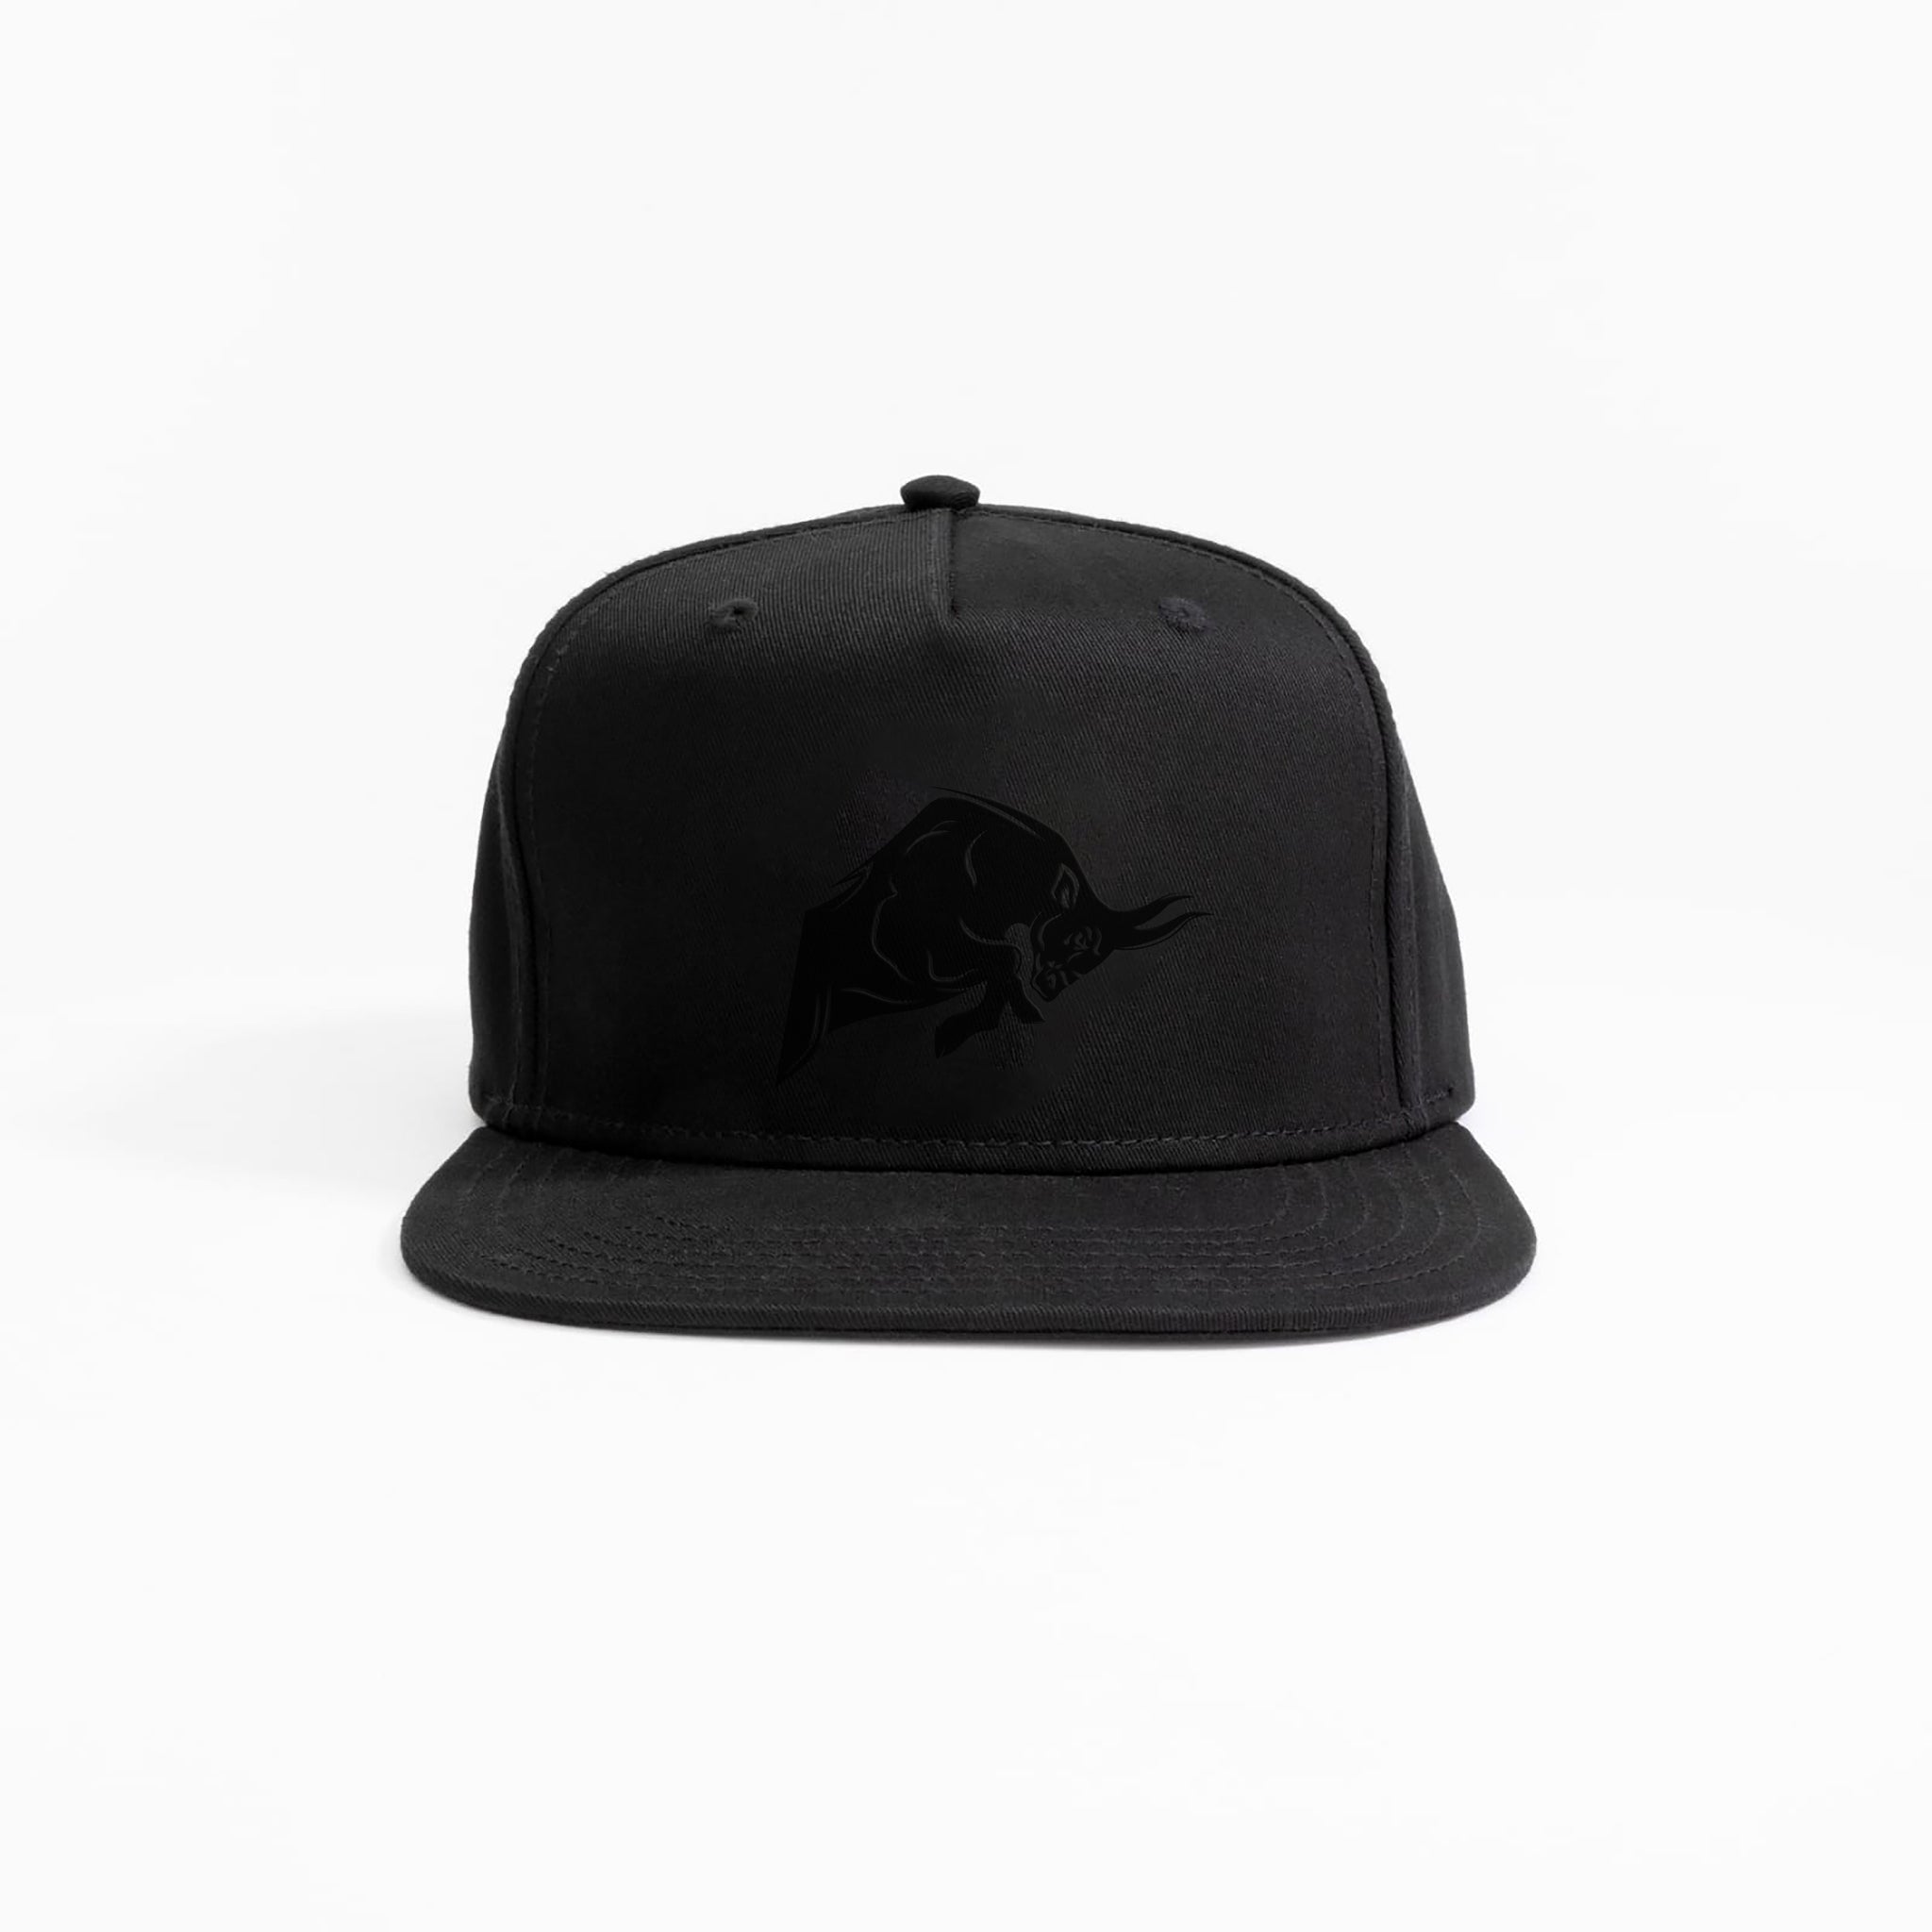 Signature Bull Cap - Snapback (Black)